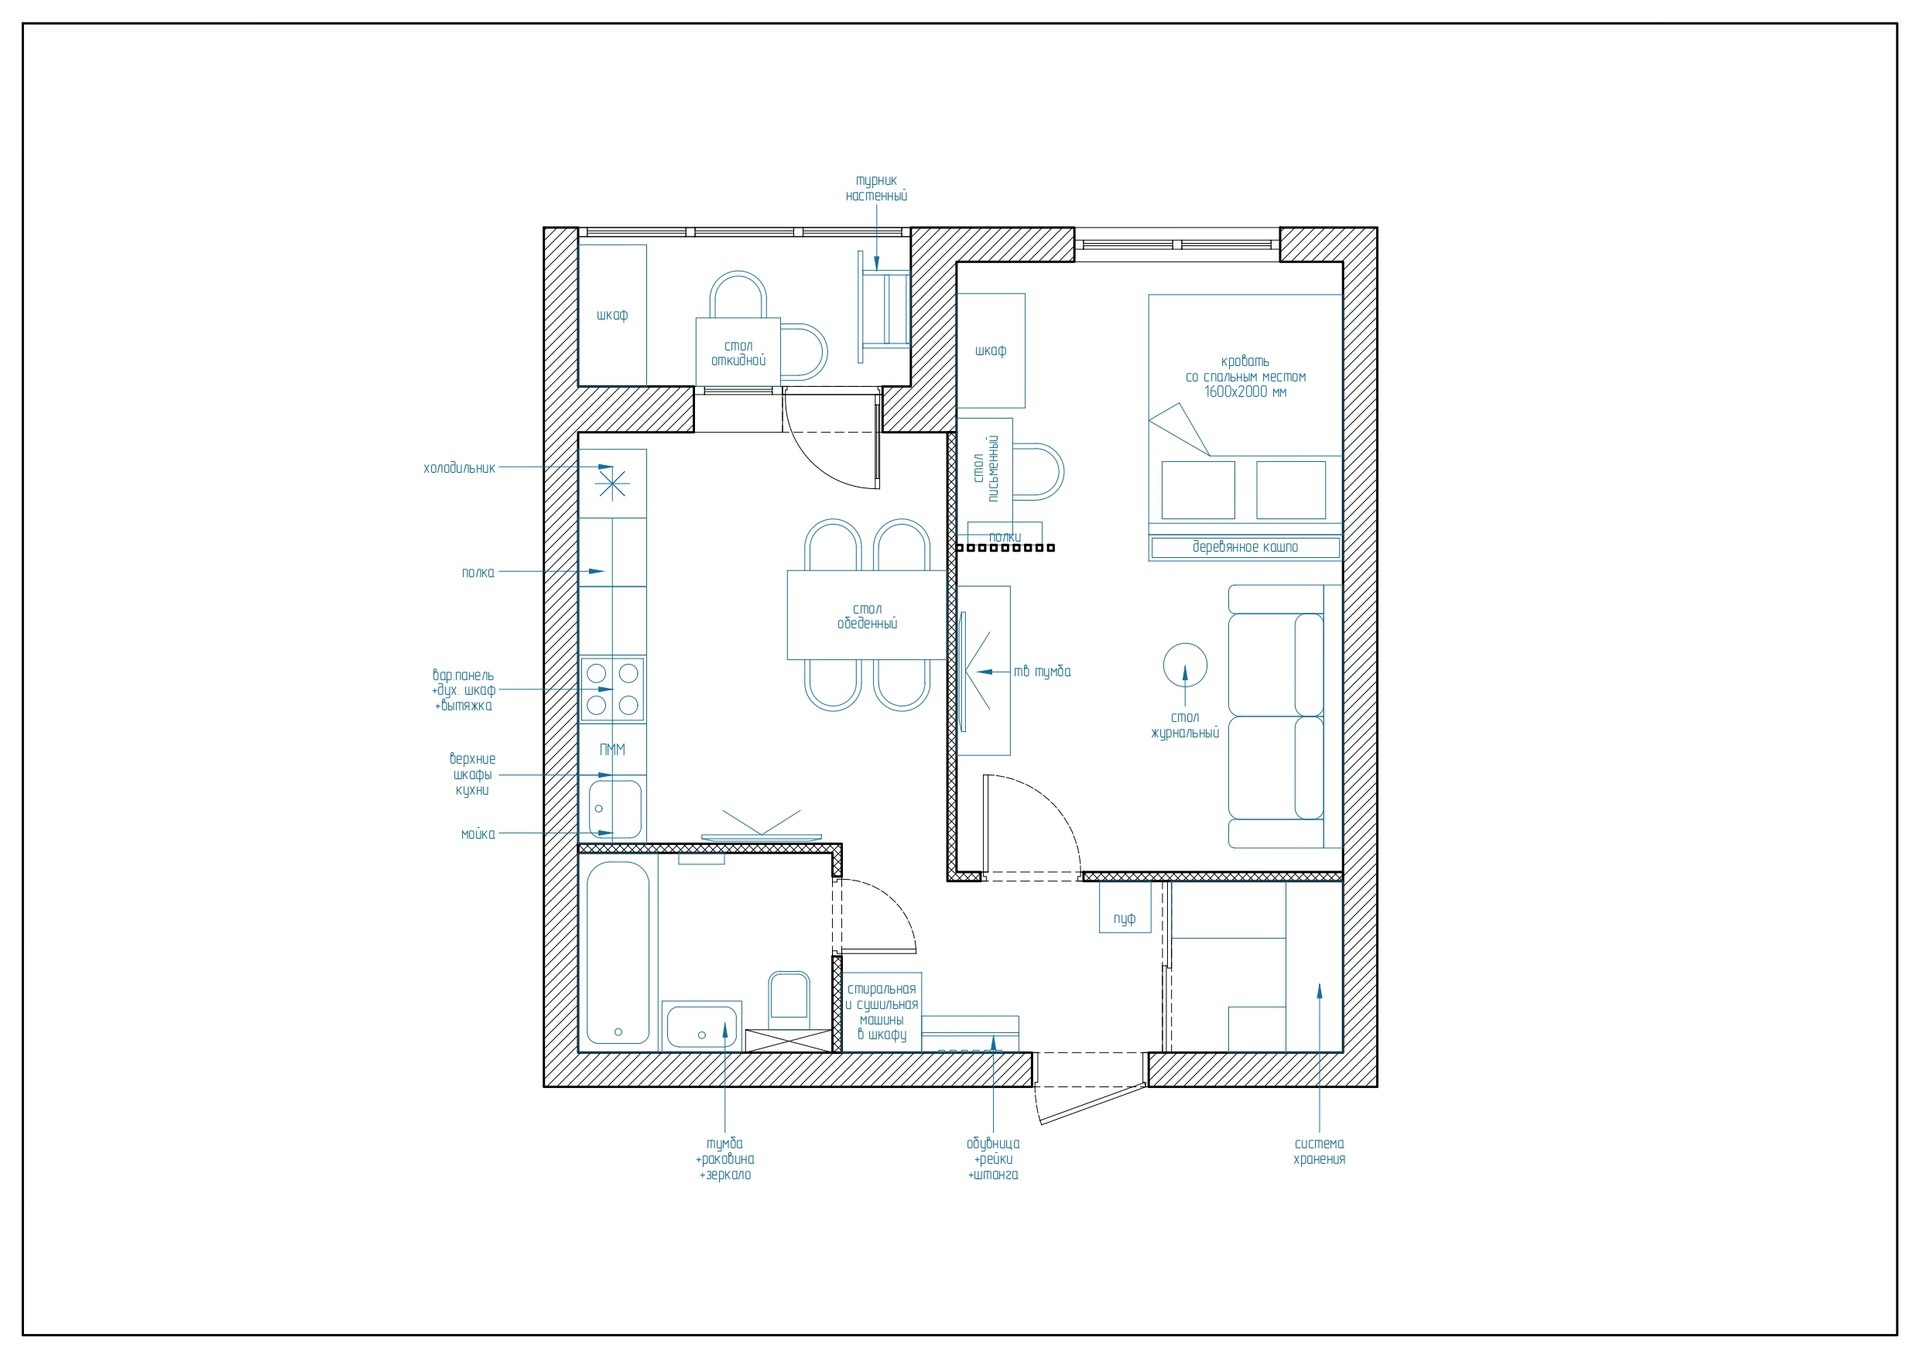 Và đây là sơ đồ thiết kế nội thất căn hộ tại Samara do NTK Aigul Sultanova cung cấp.